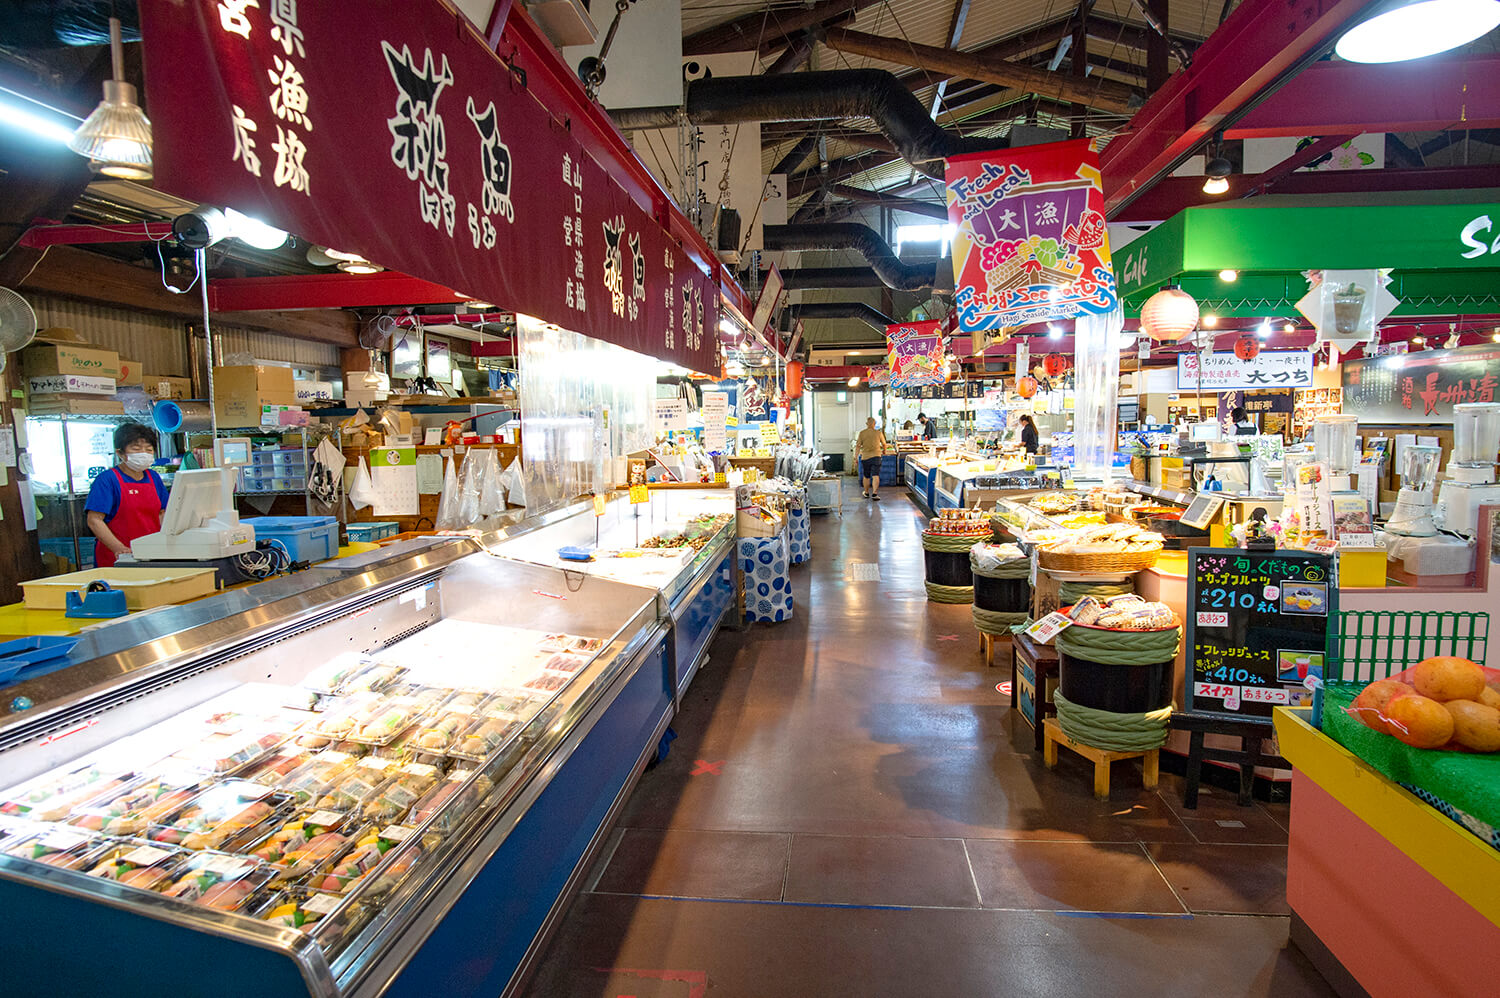 観光客に加えて地元の買い物客で賑わう。鮮魚や旬の農産物など、店内に萩の逸品が集まる